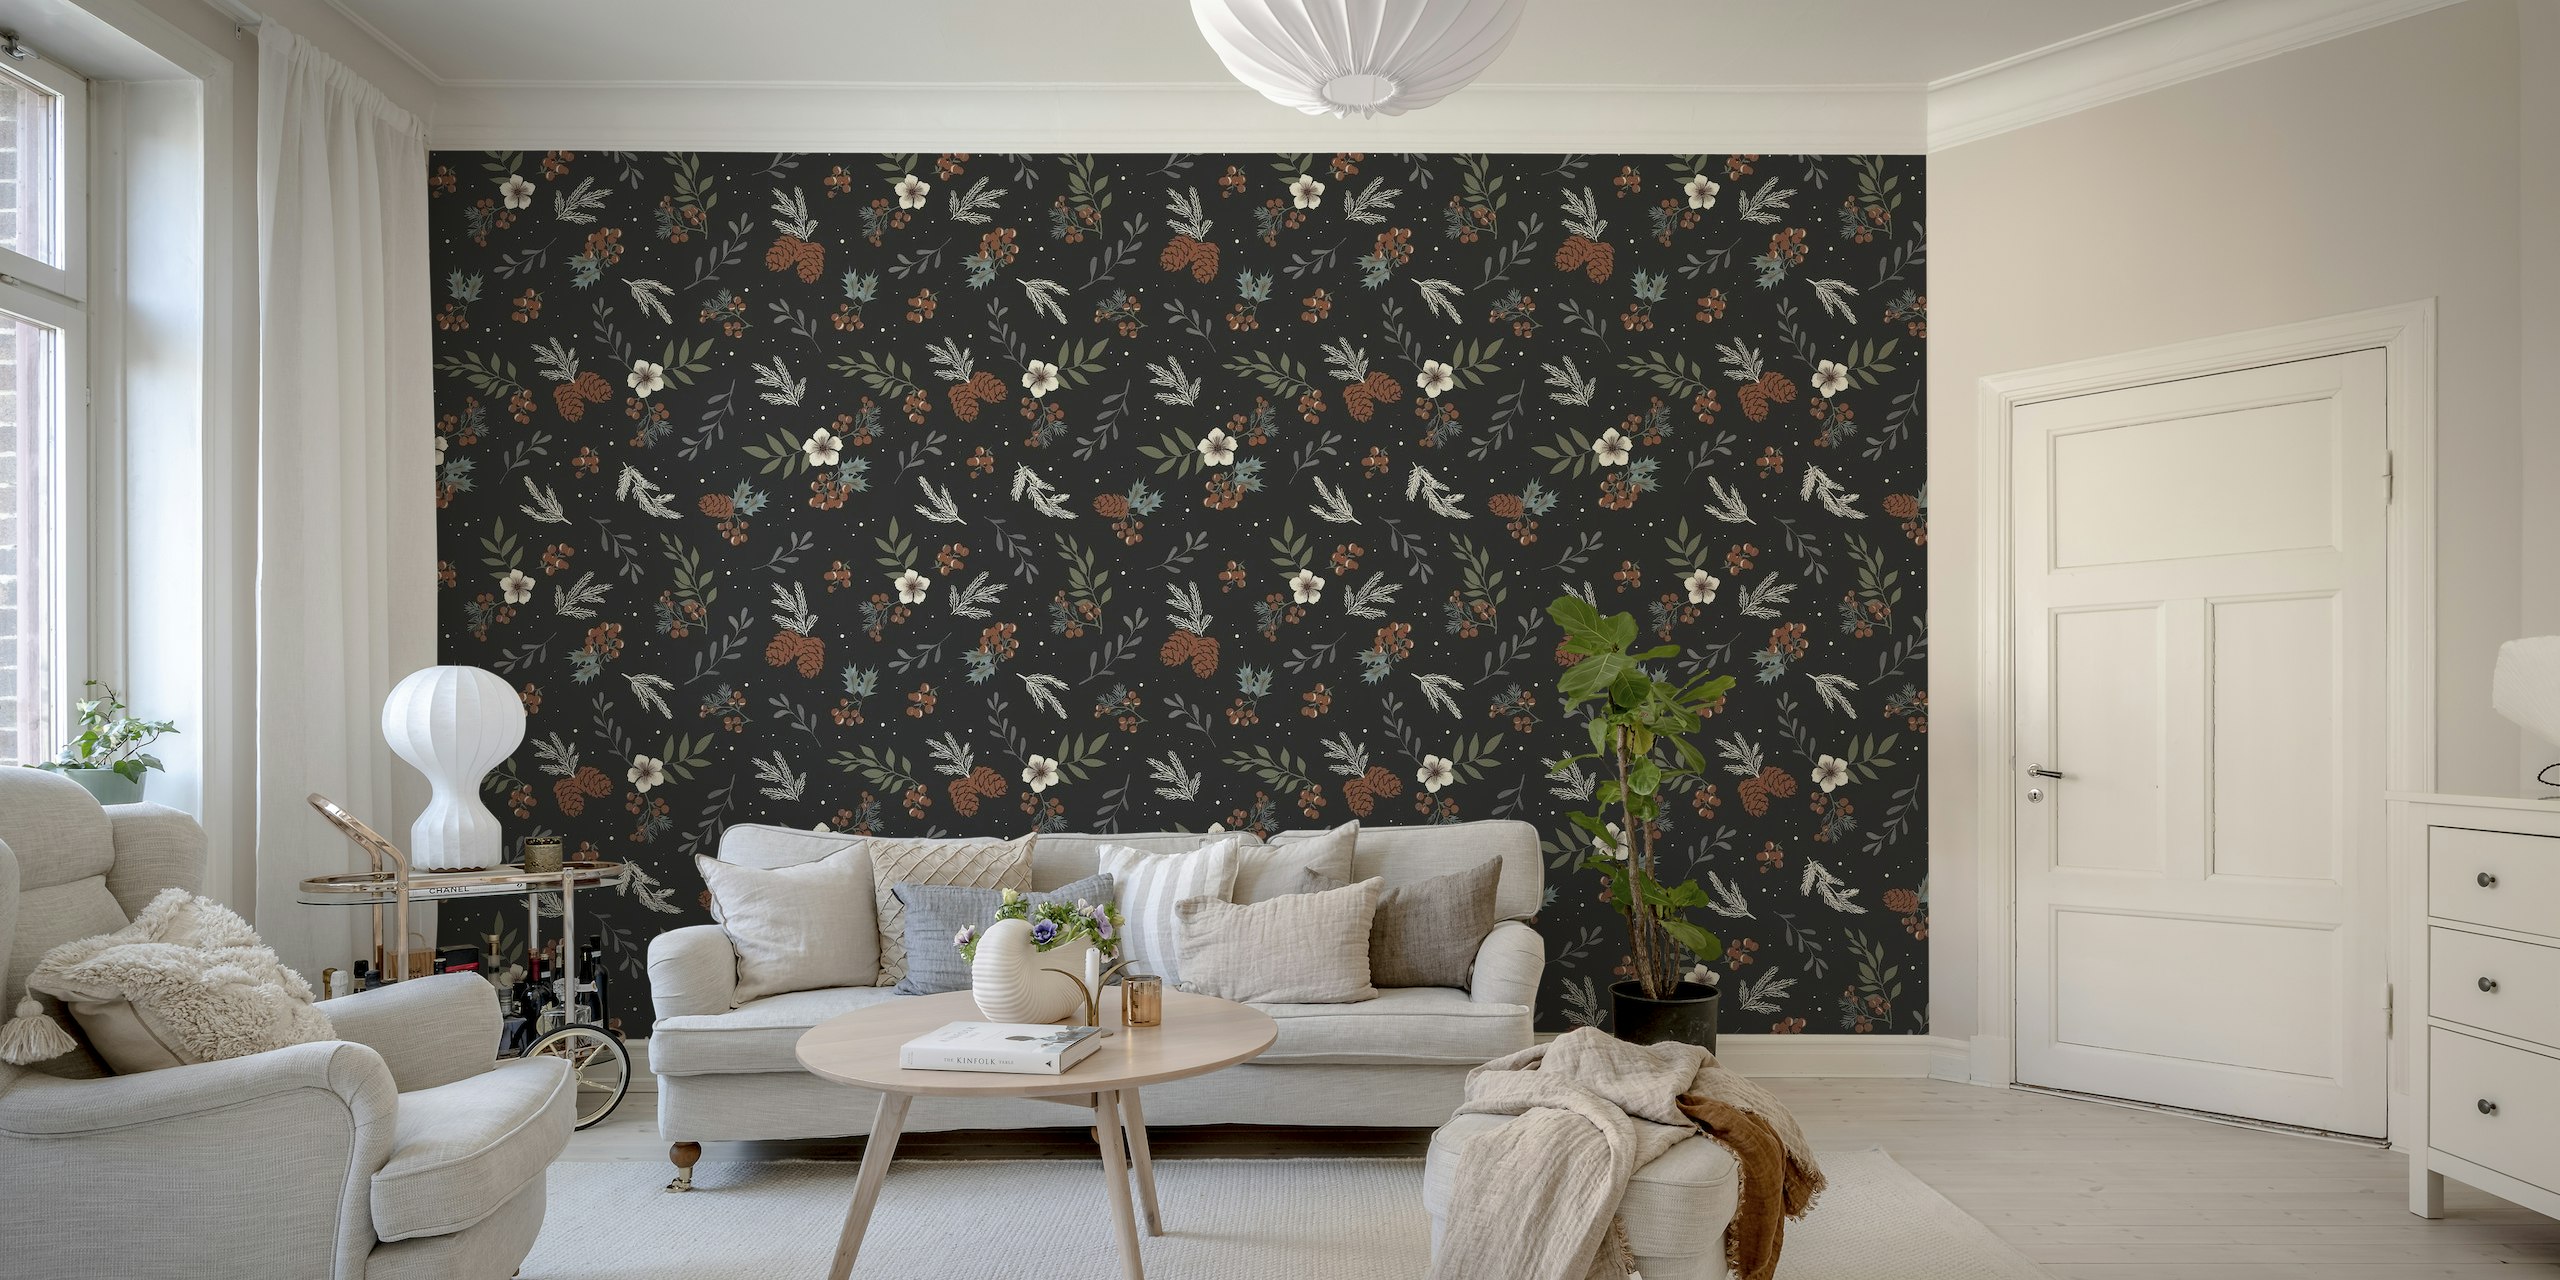 Mural de parede inspirado no inverno com galhos de pinheiro, bagas de azevinho e flores em um fundo escuro